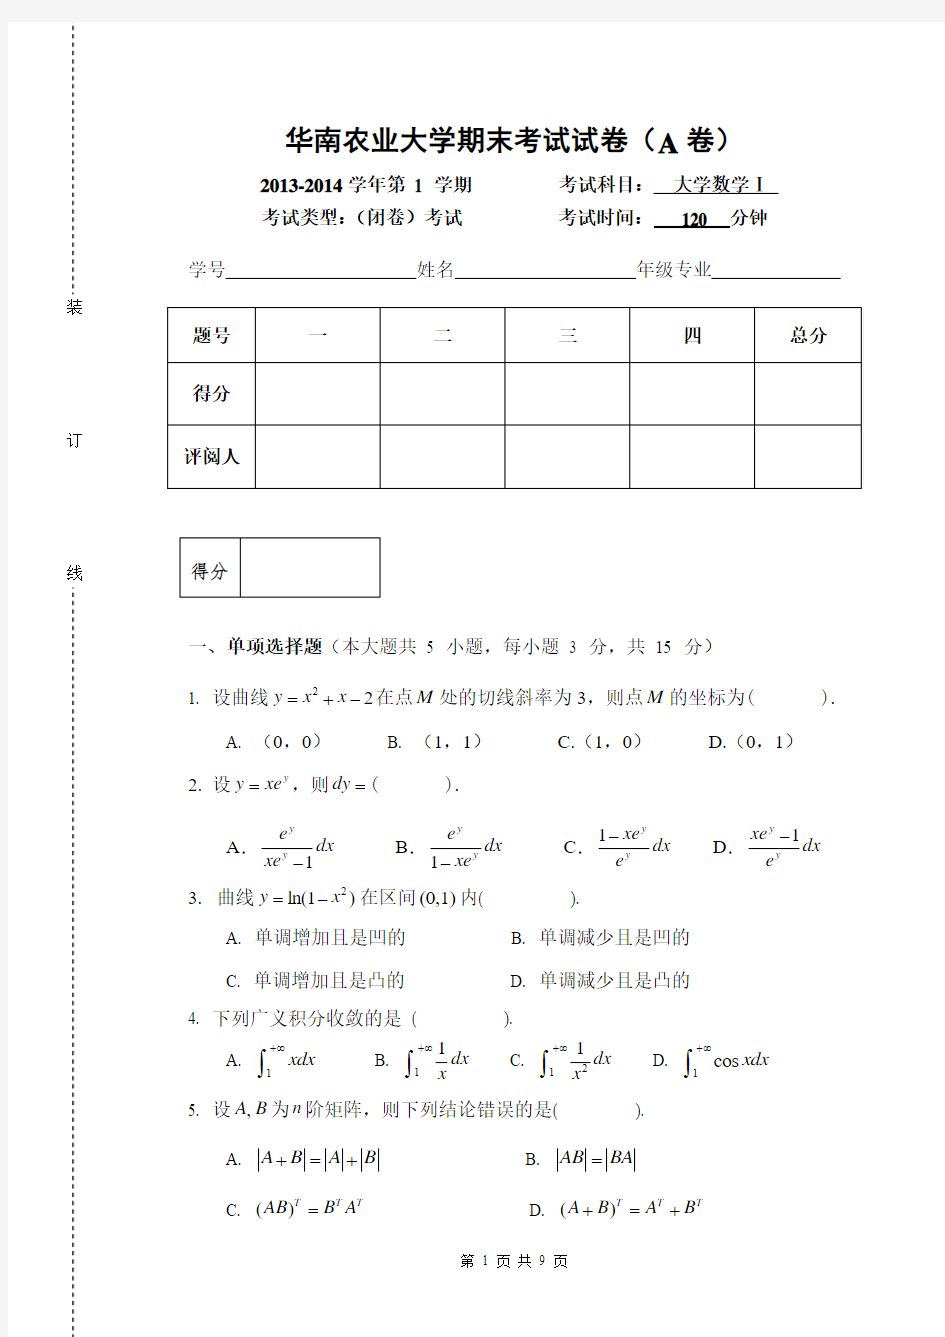 华南农业大学2013-2014大学数学1试题及答案